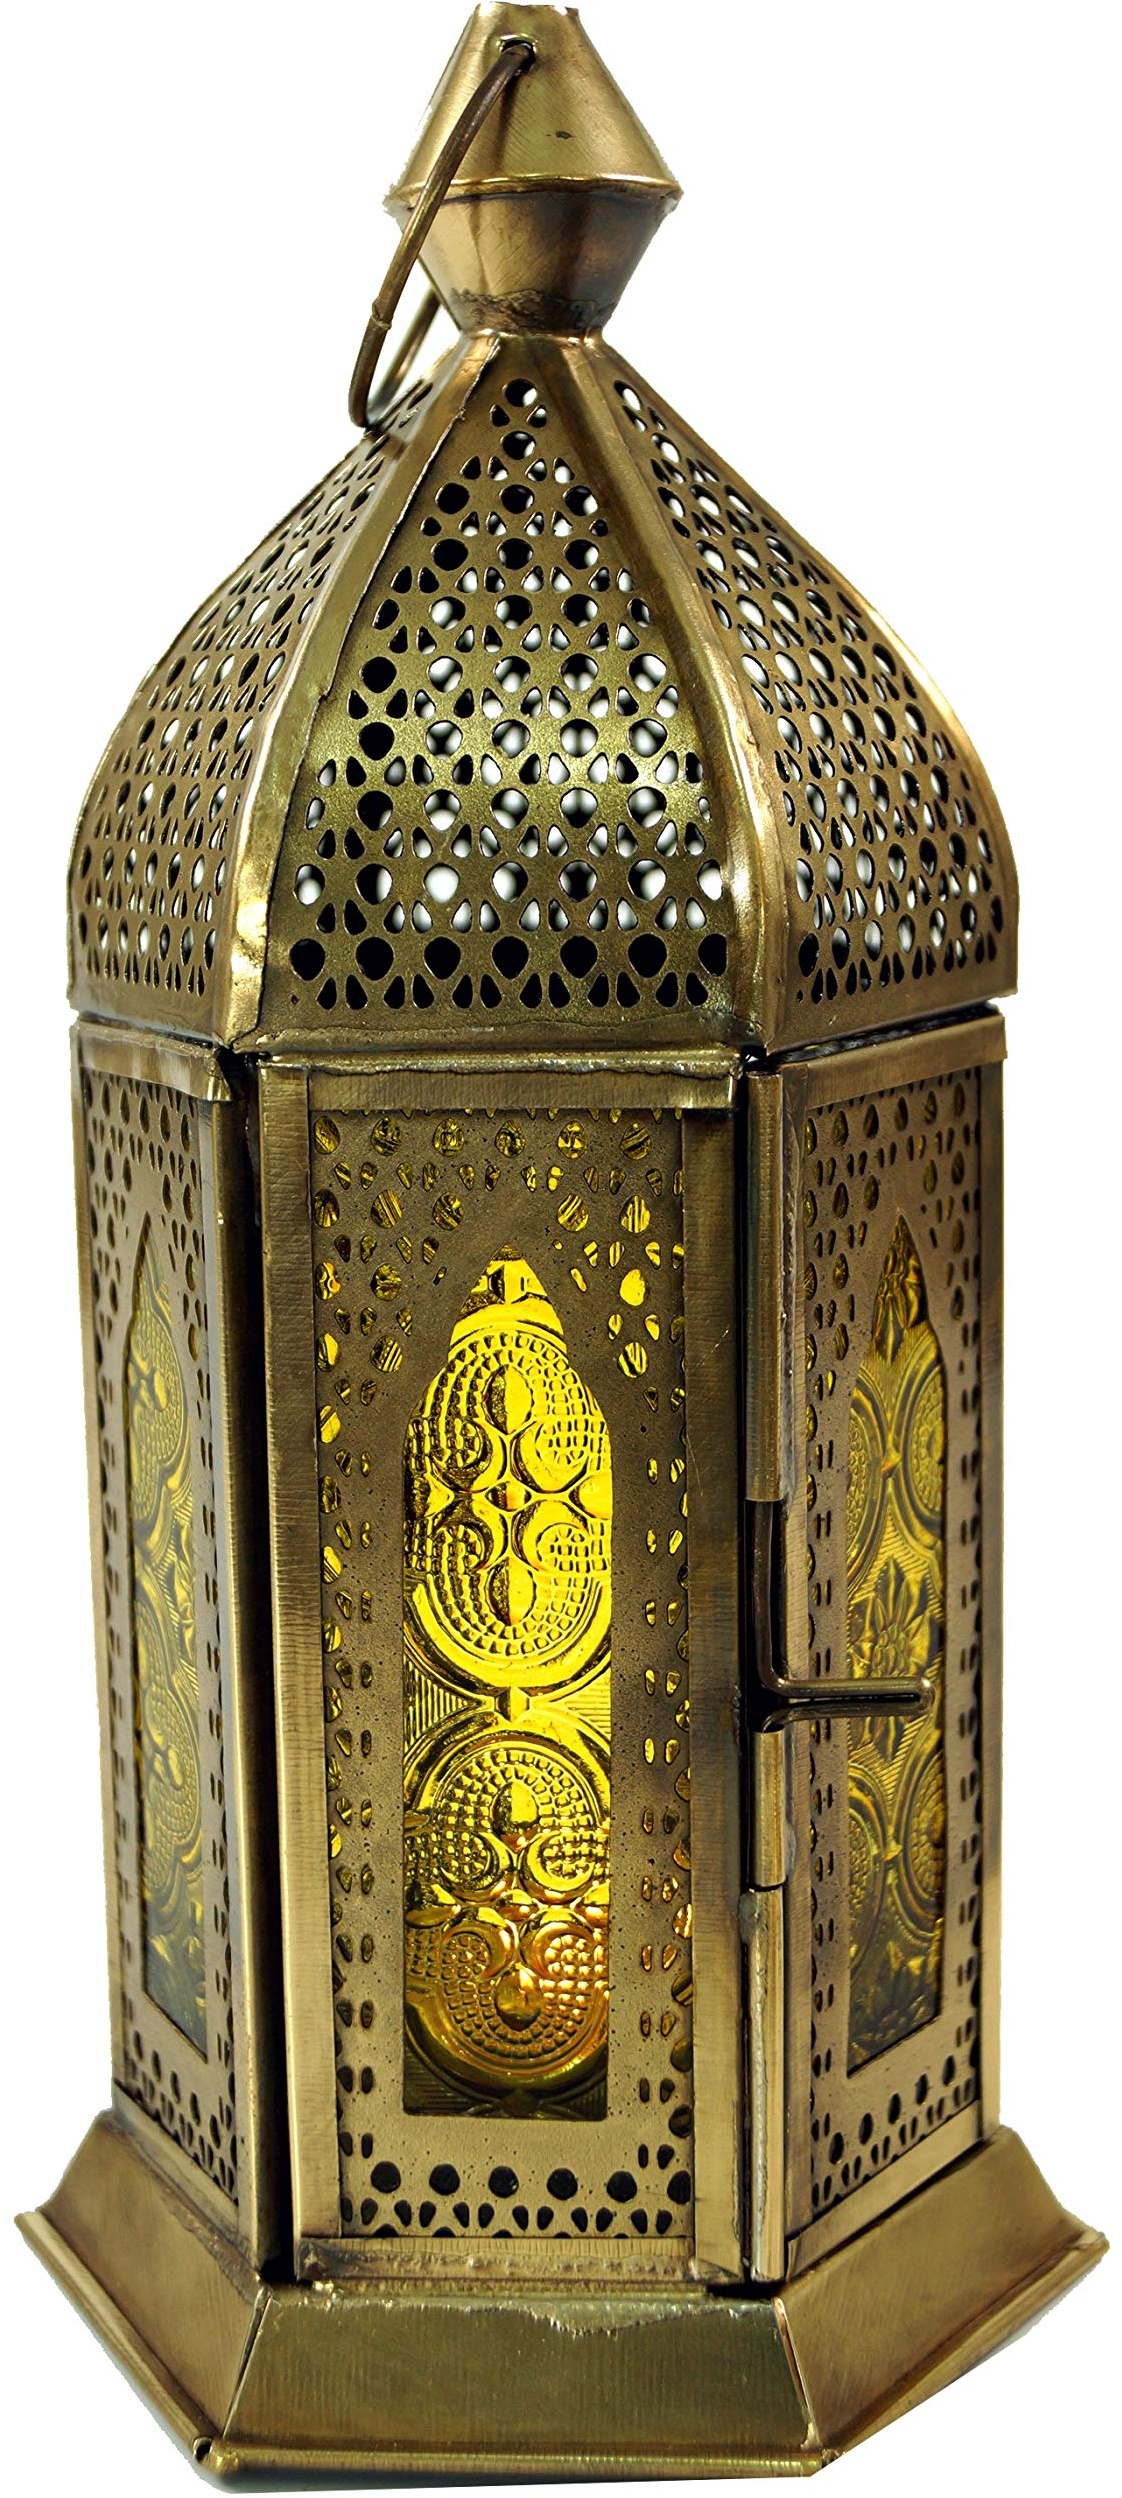 GURU SHOP Orientalische Metall/Glas Laterne in Marrokanischem Design, Windlicht, Gelb, Farbe: Gelb, 21x9,5x9,5 cm, Orientalische Laternen